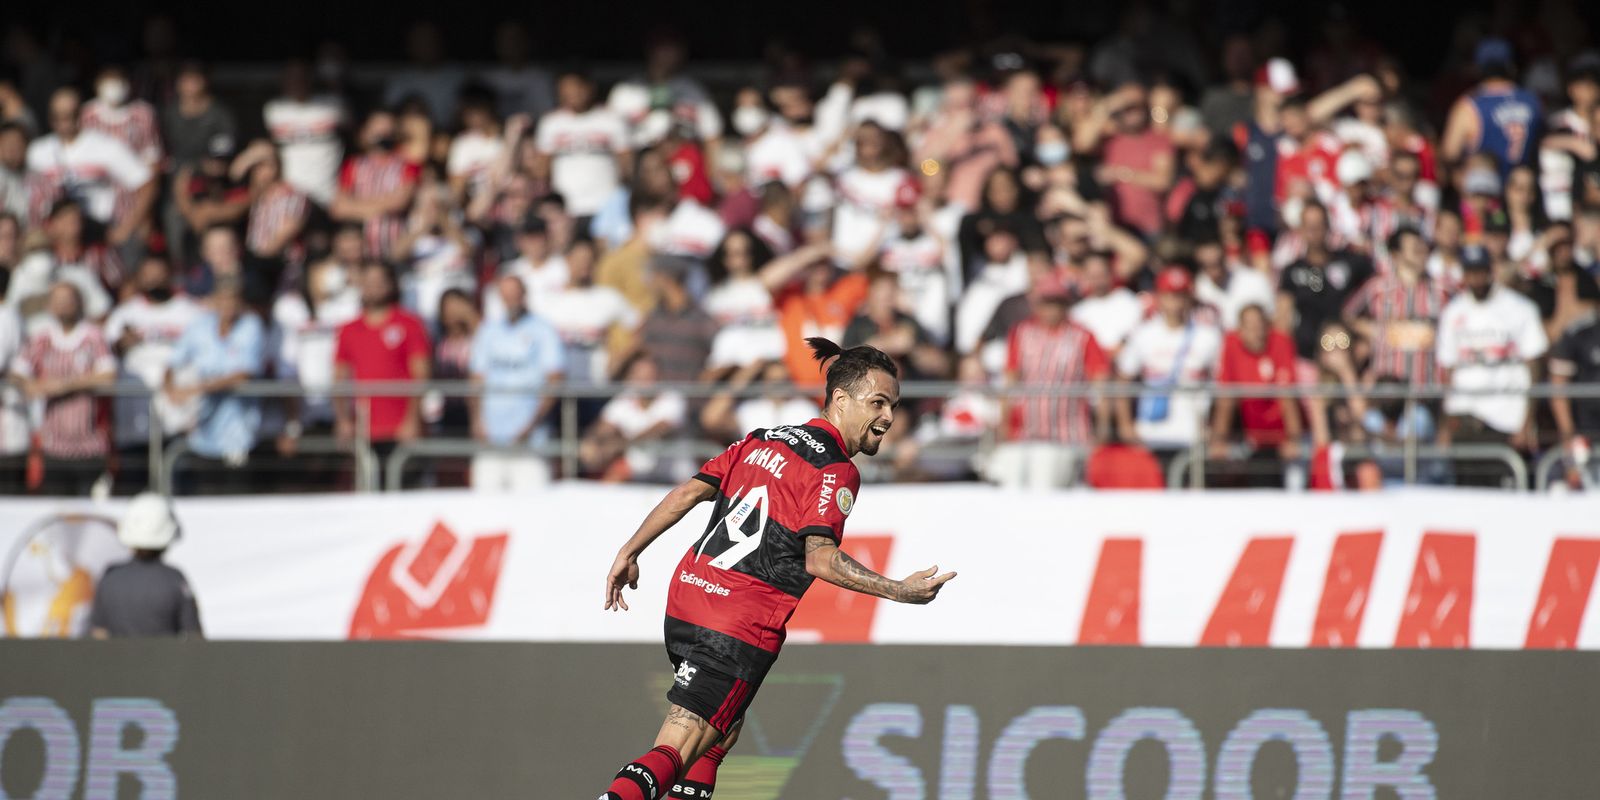 Michael - Flamengo - goleada sobre são paulo - Brasileiro - 4 a 0